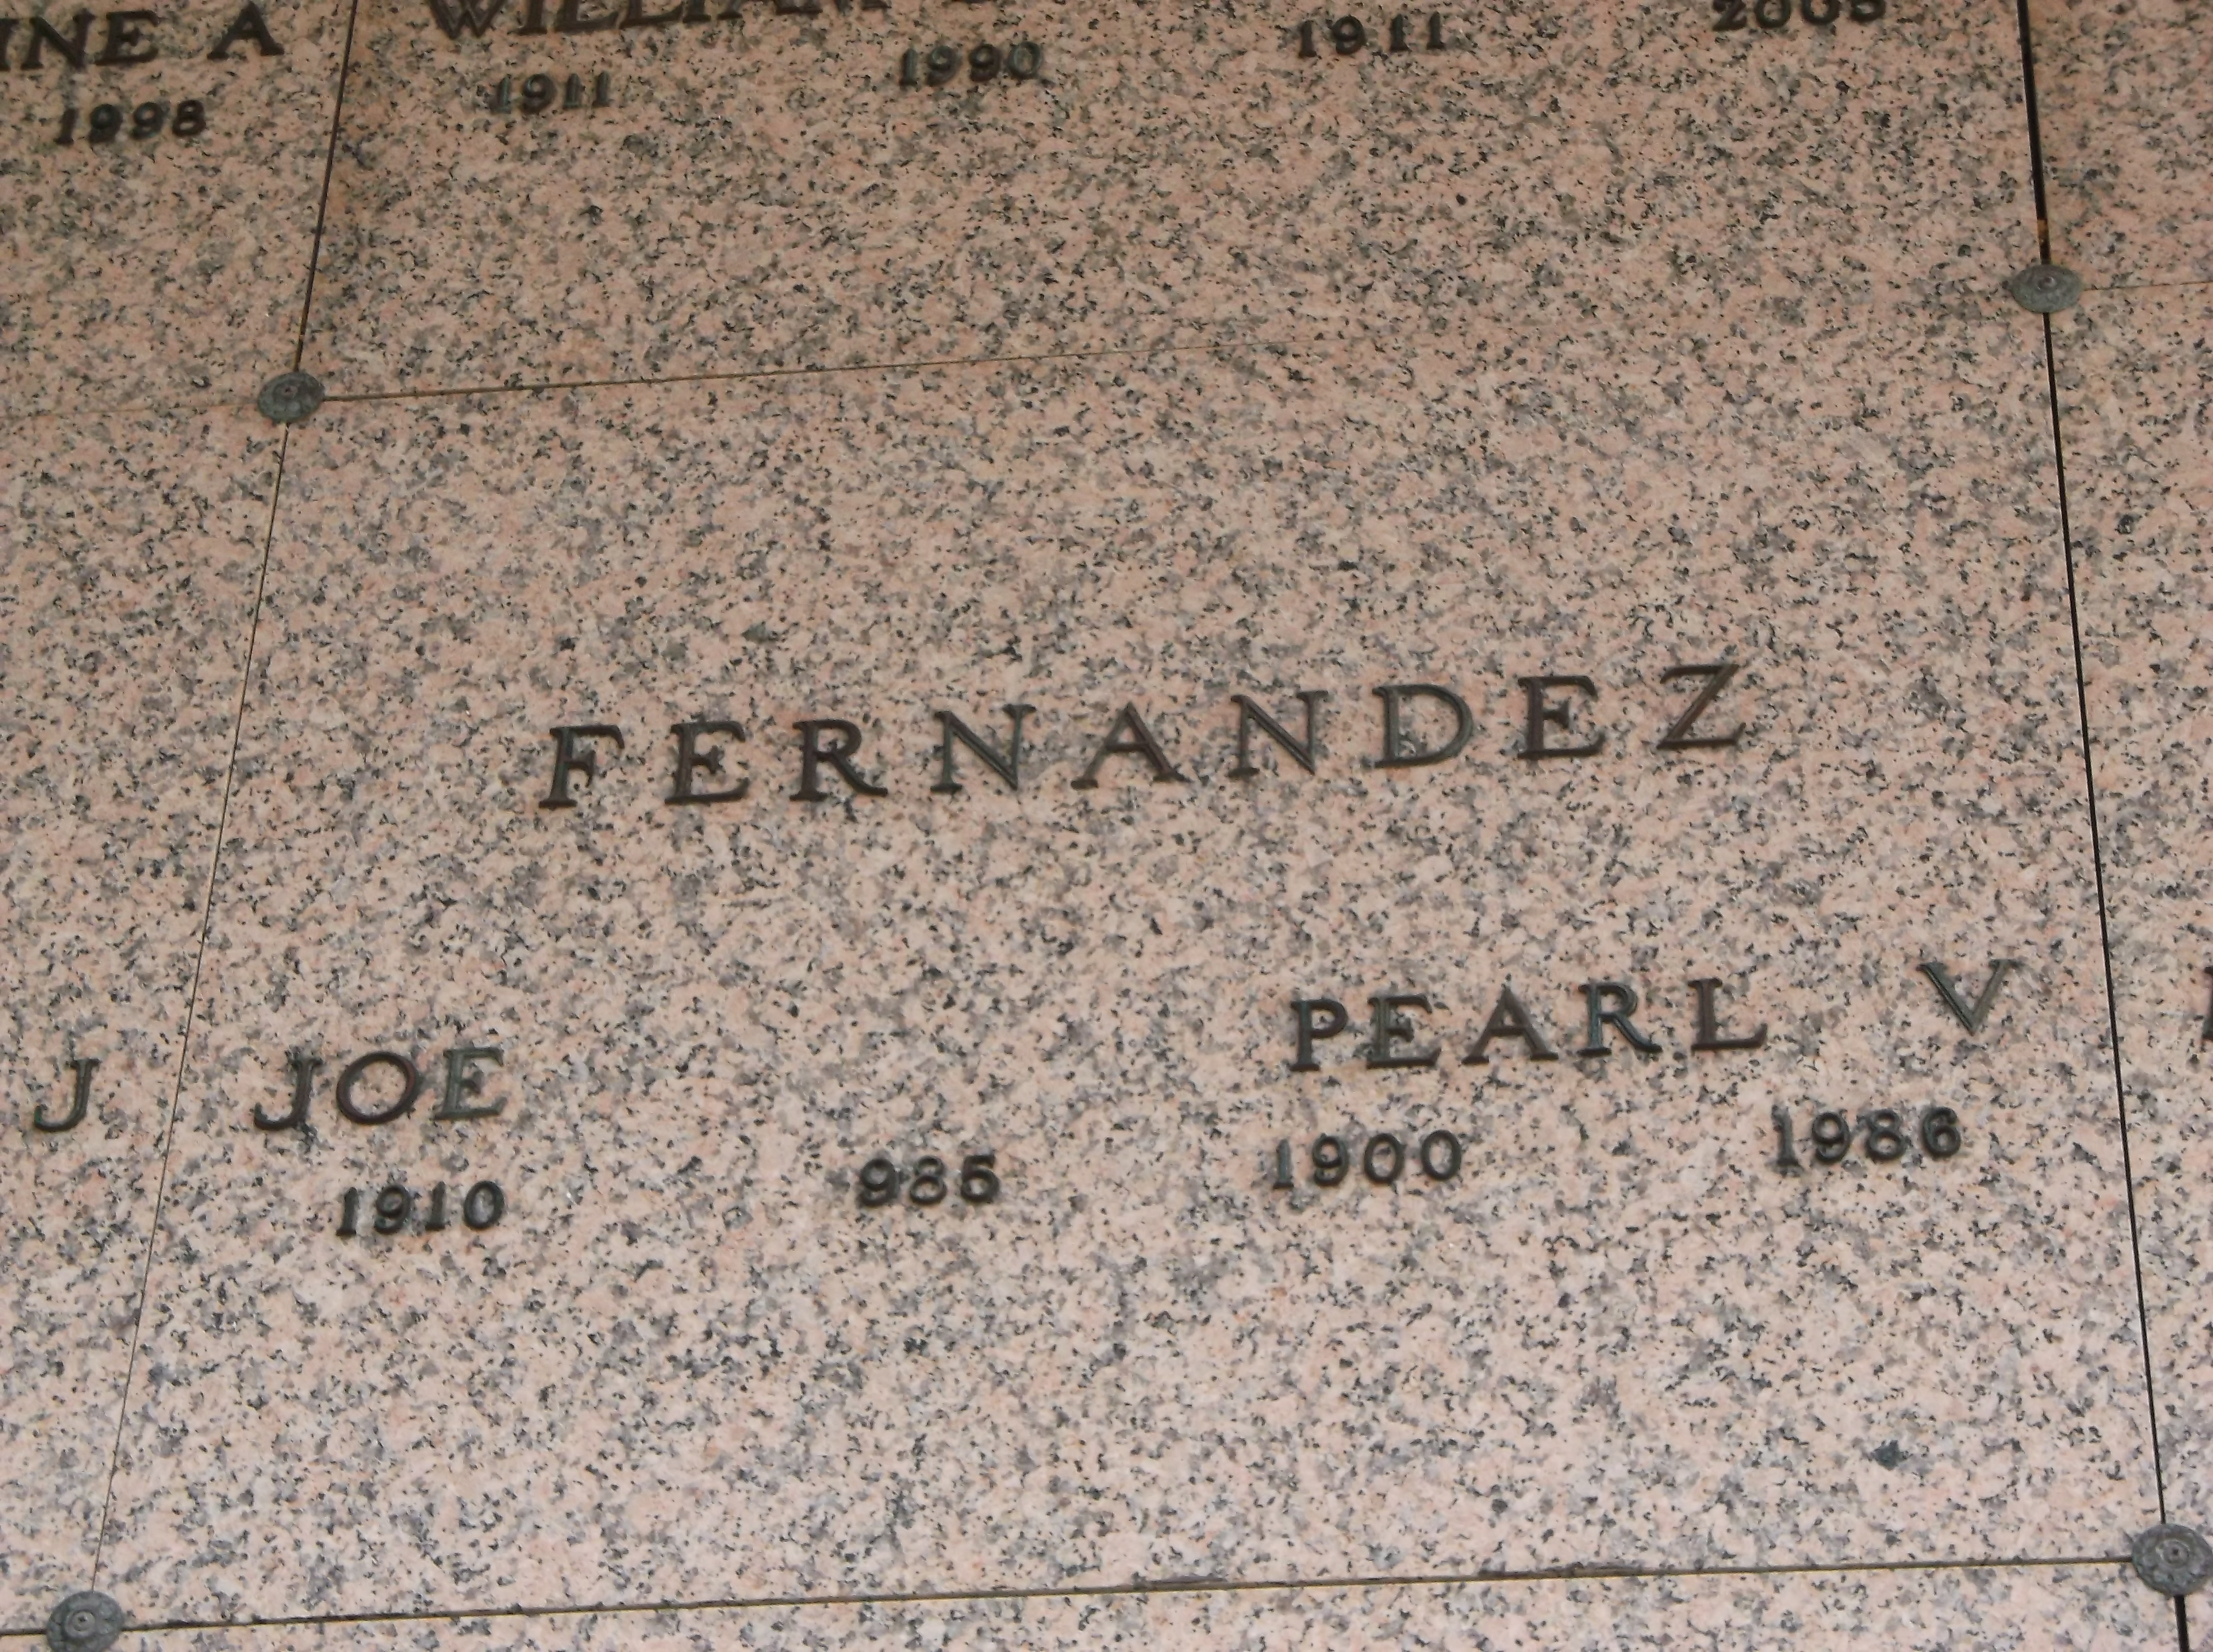 Pearl V Fernandez